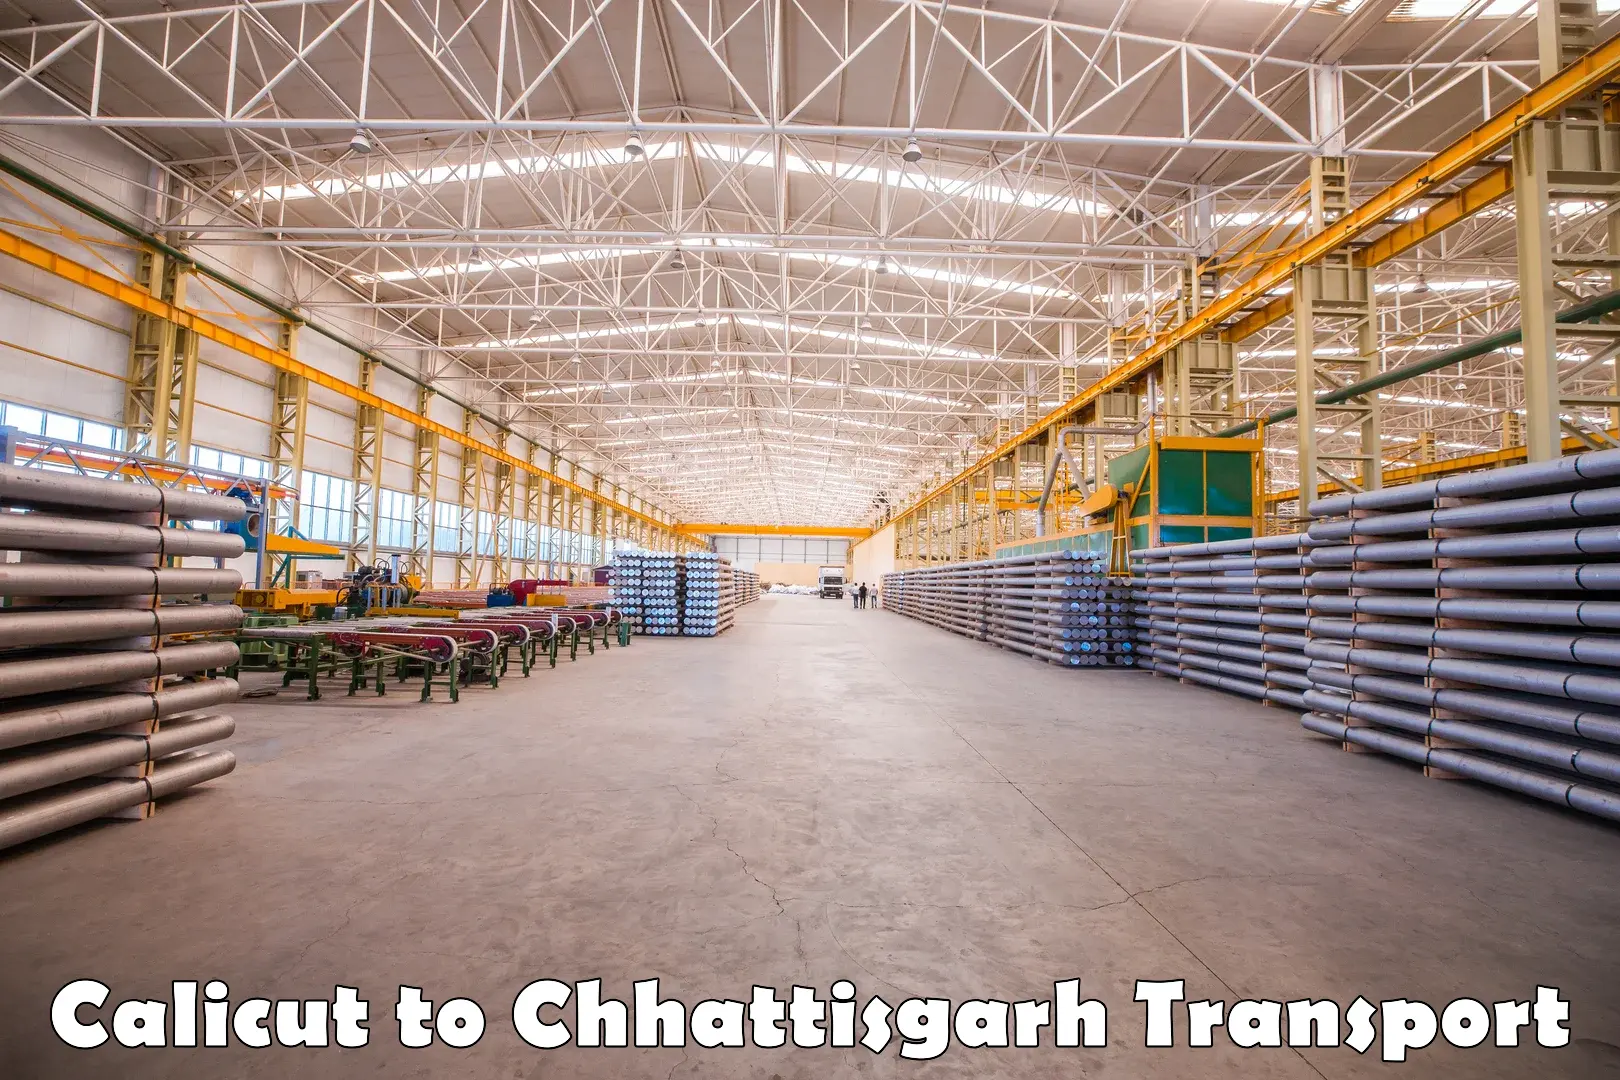 Furniture transport service Calicut to Chhattisgarh